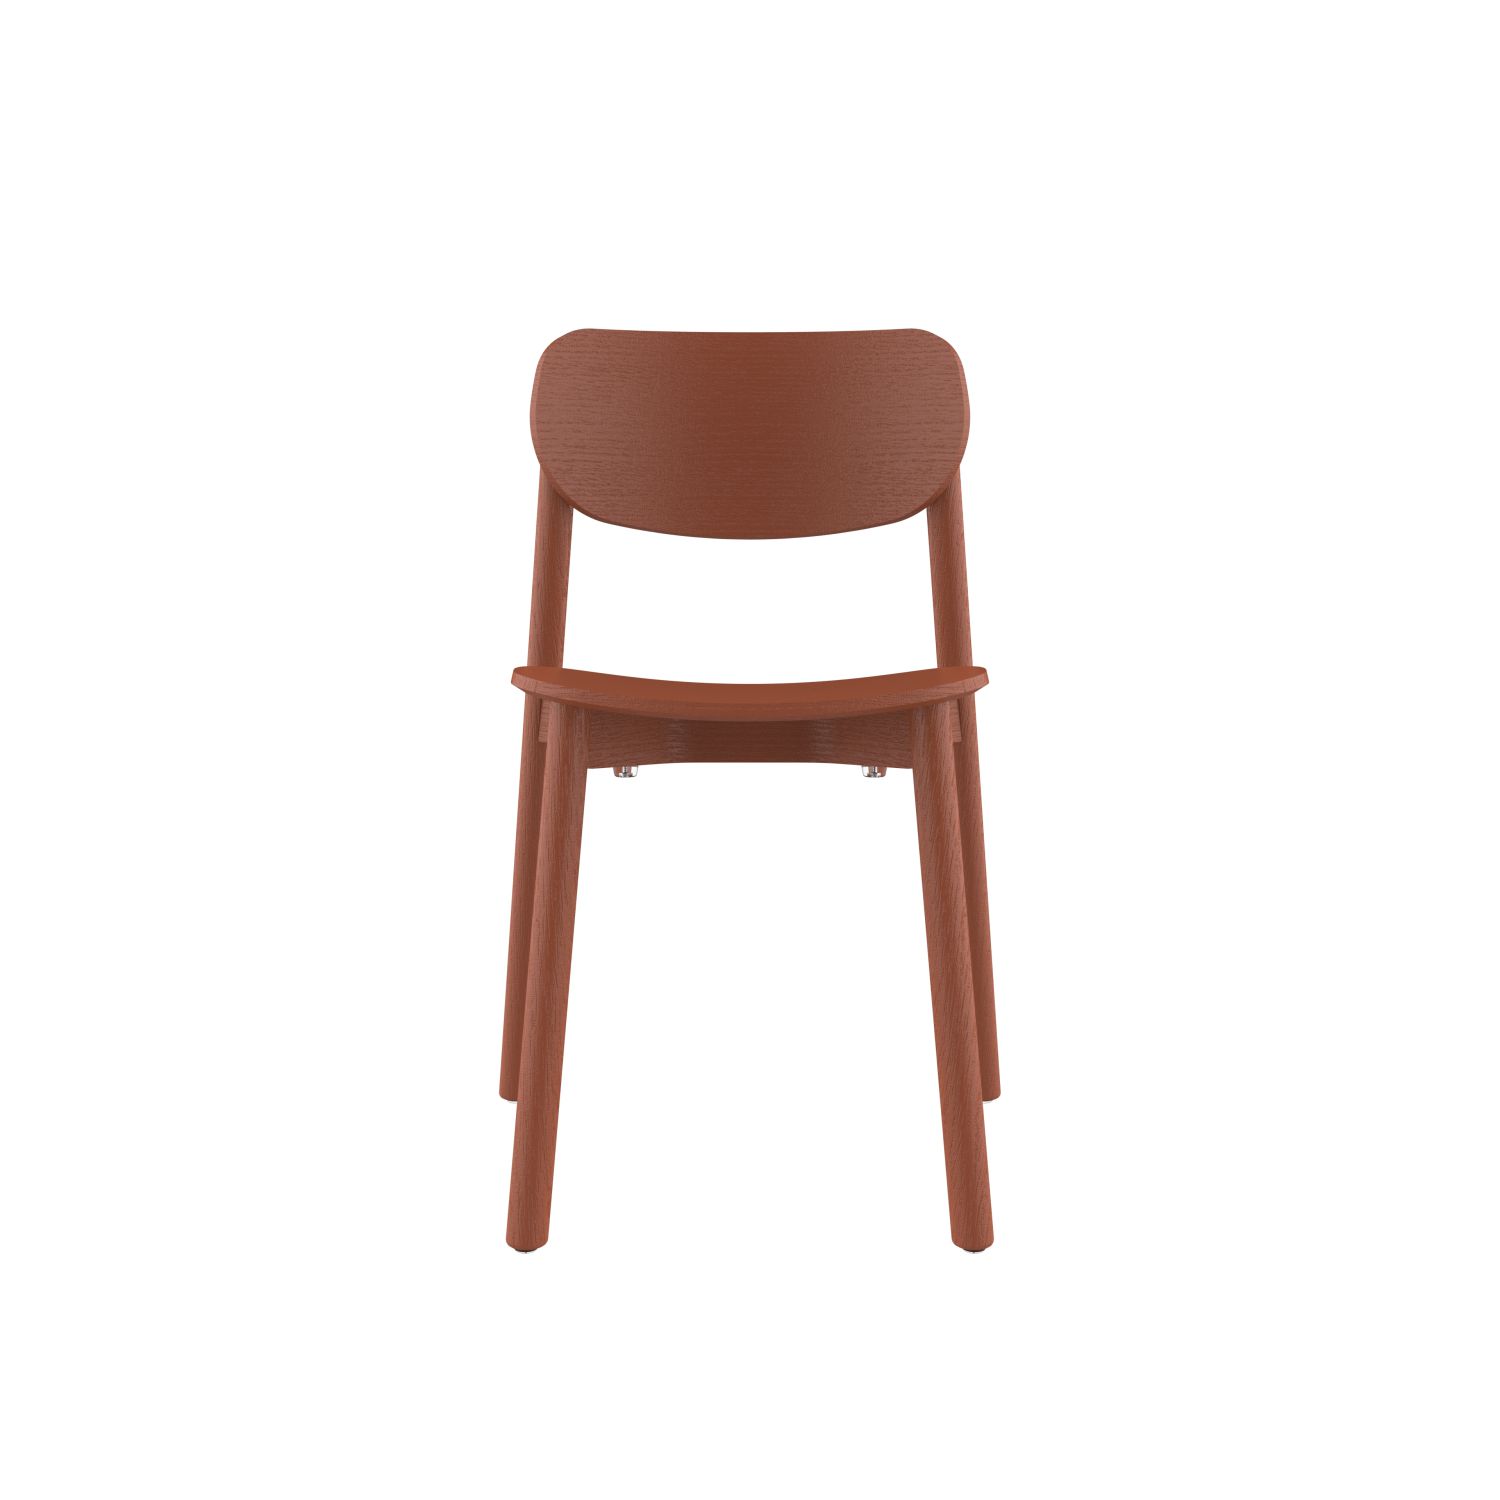 lensvelt studio stefan scholten 2thrd chair stackable no armrests copper brown ral8004 hard leg ends